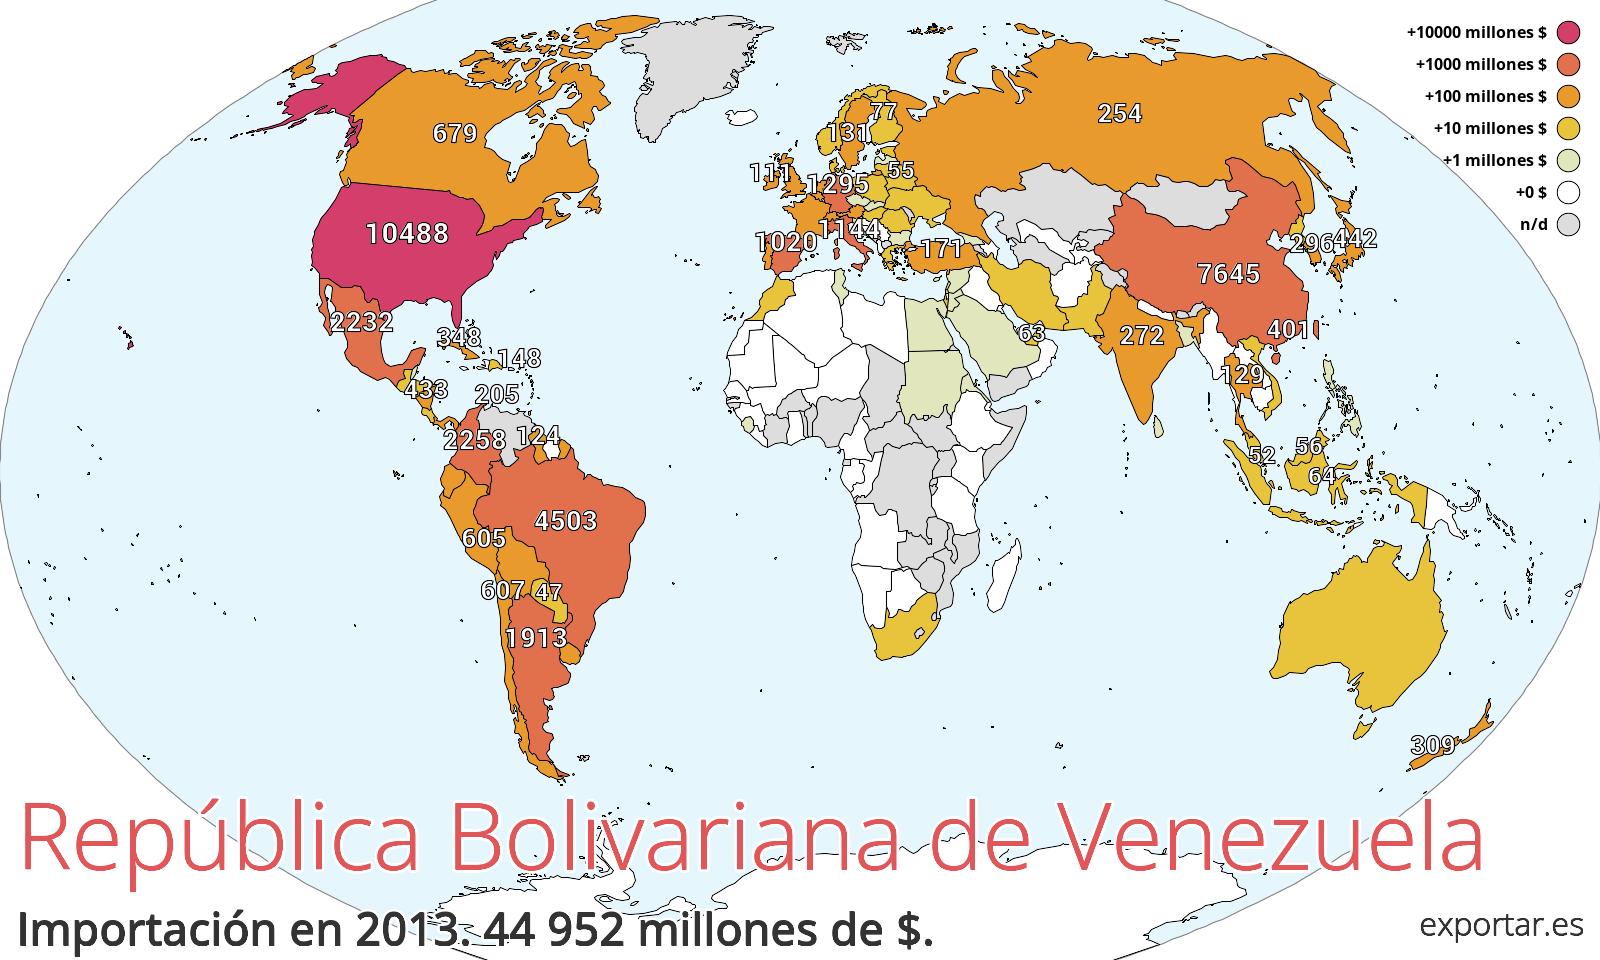 Mapa de importación de República Bolivariana de Venezuela en 2013.